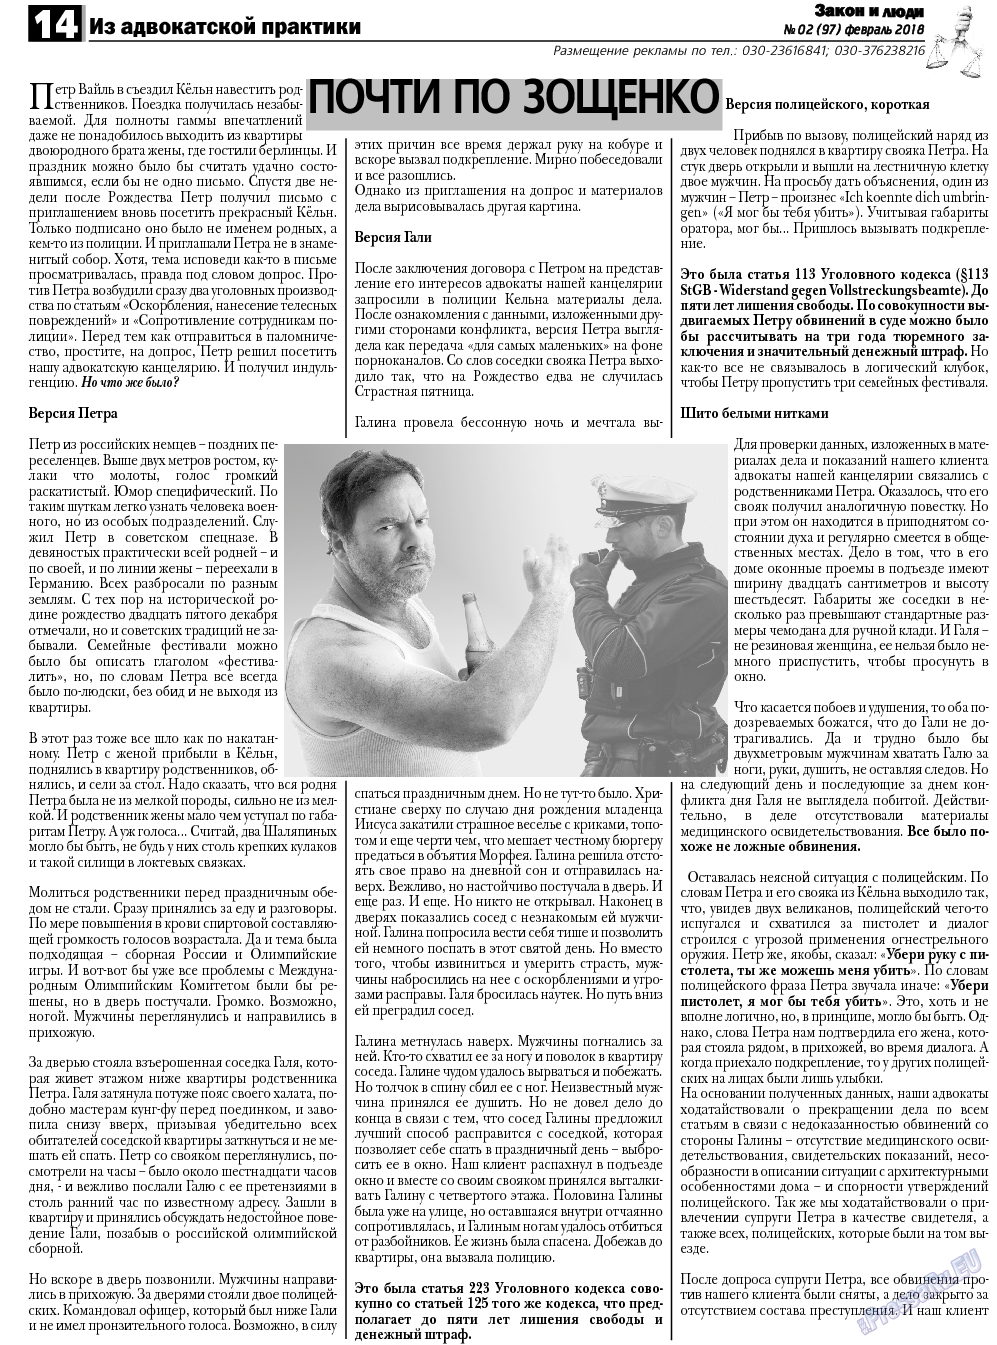 Закон и люди, газета. 2018 №2 стр.14